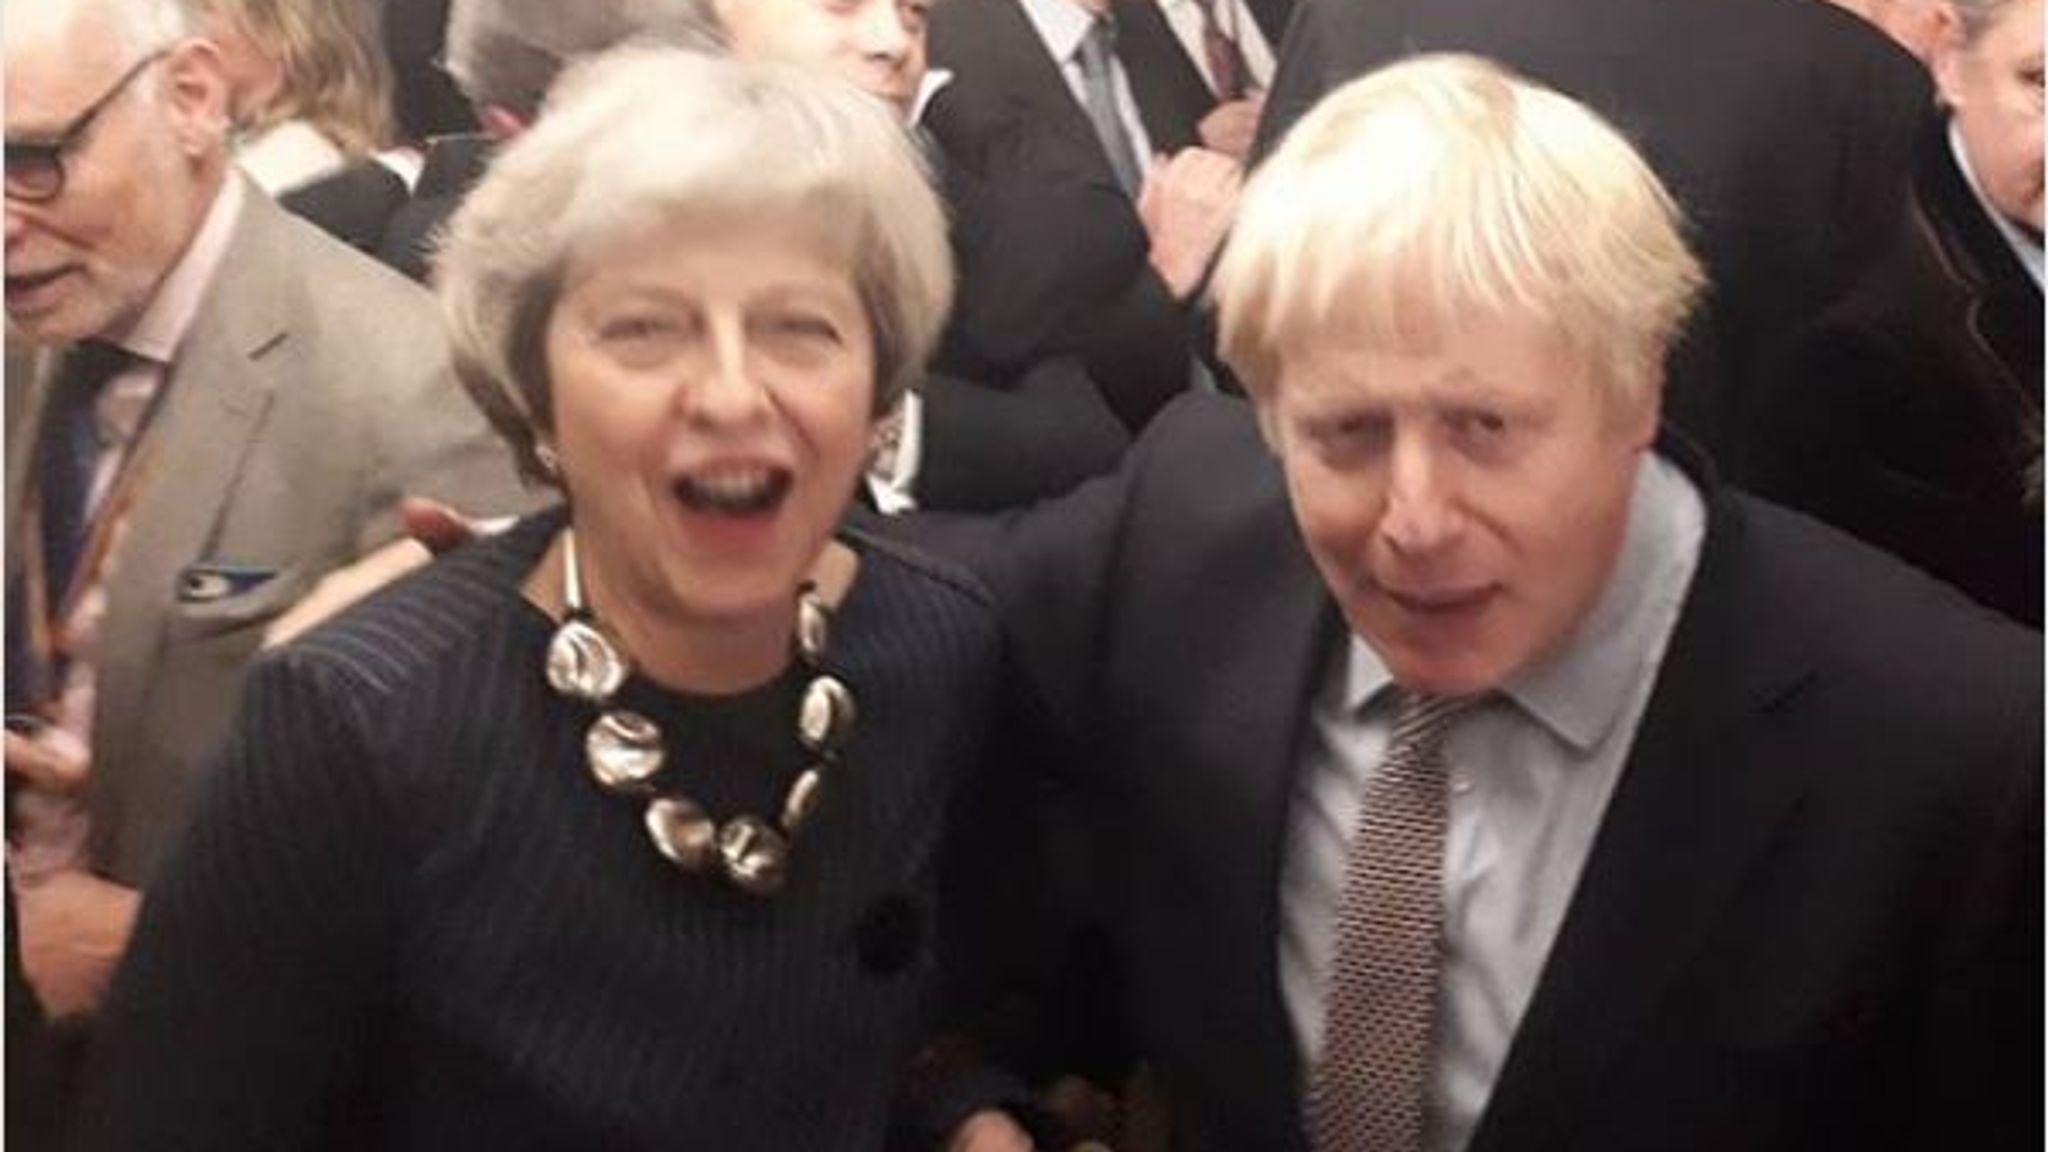 Boris Johnson and Theresa May bury hatchet to toast Tory election win |  Politics News | Sky News